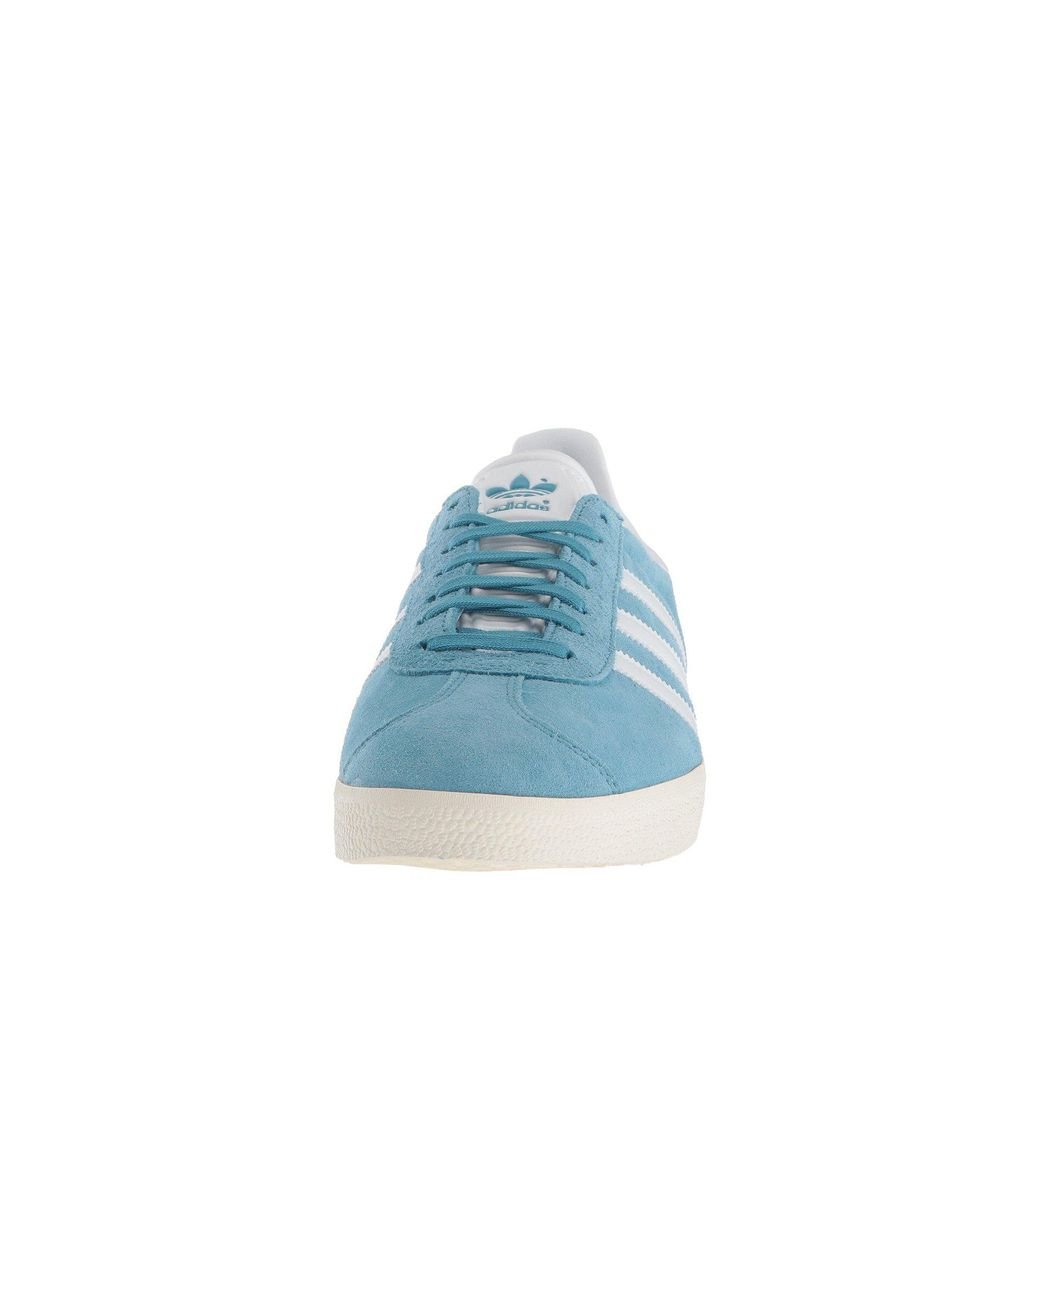 adidas Originals Gazelle (sky Blue Suede) Men's Shoes for Men | Lyst